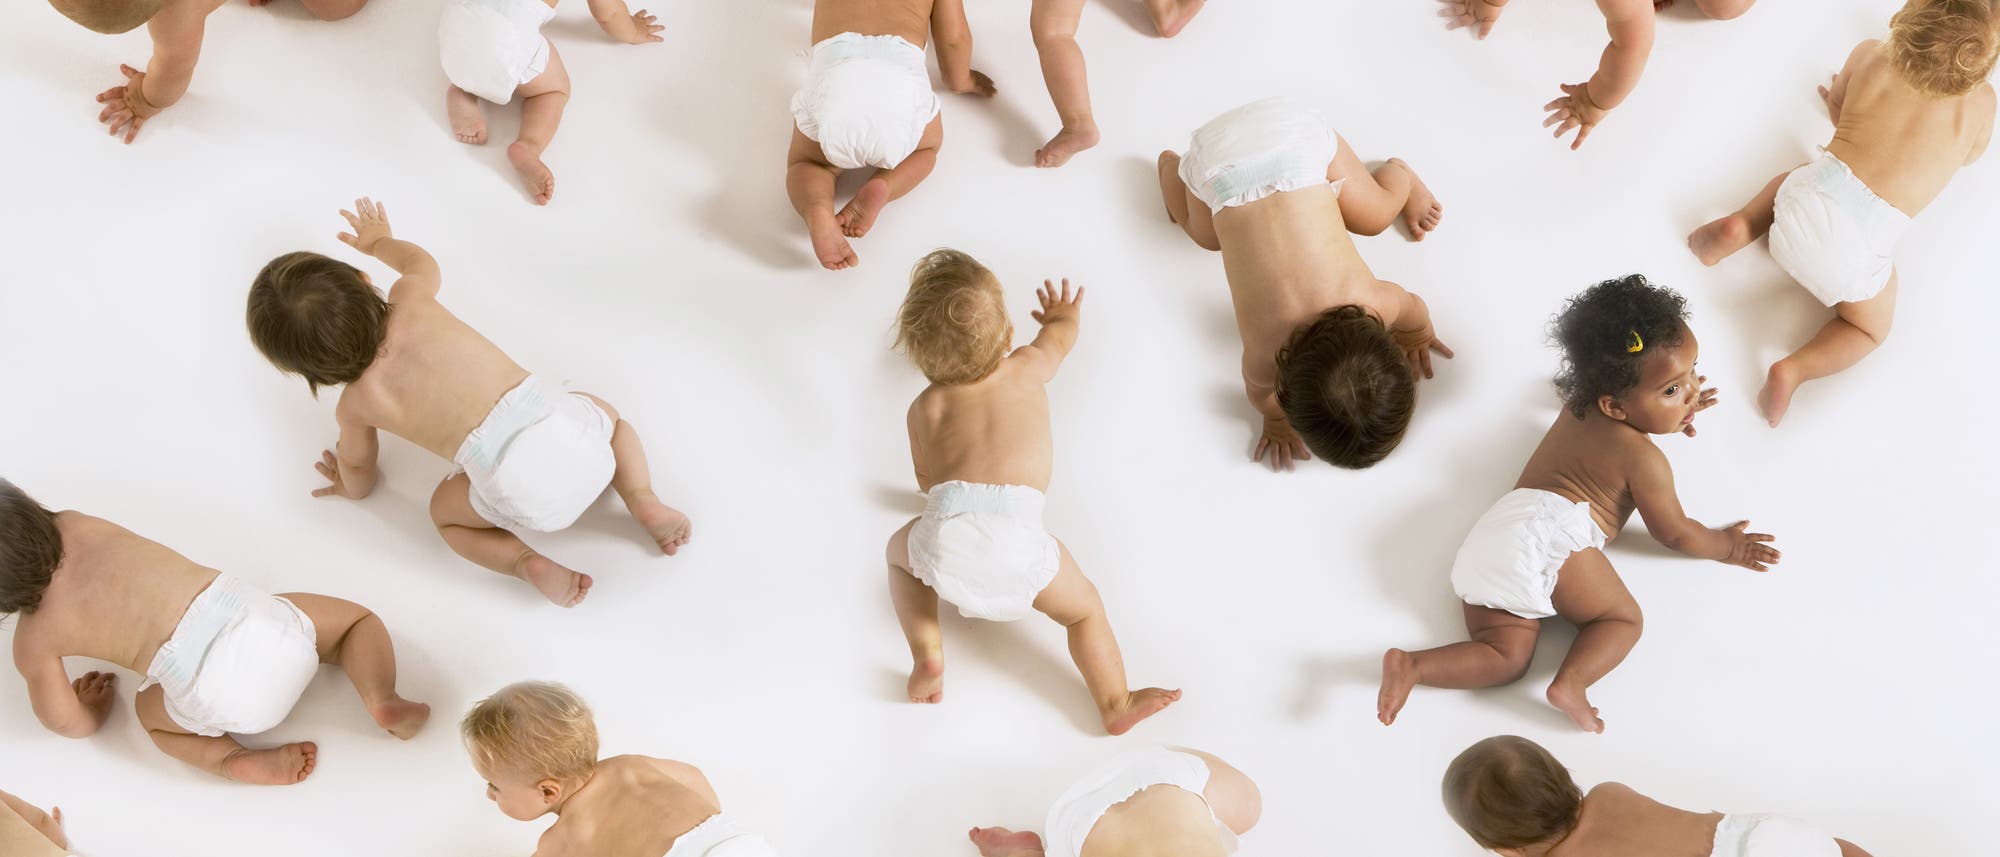 Babys krabbeln auf einem weißen Fußboden.